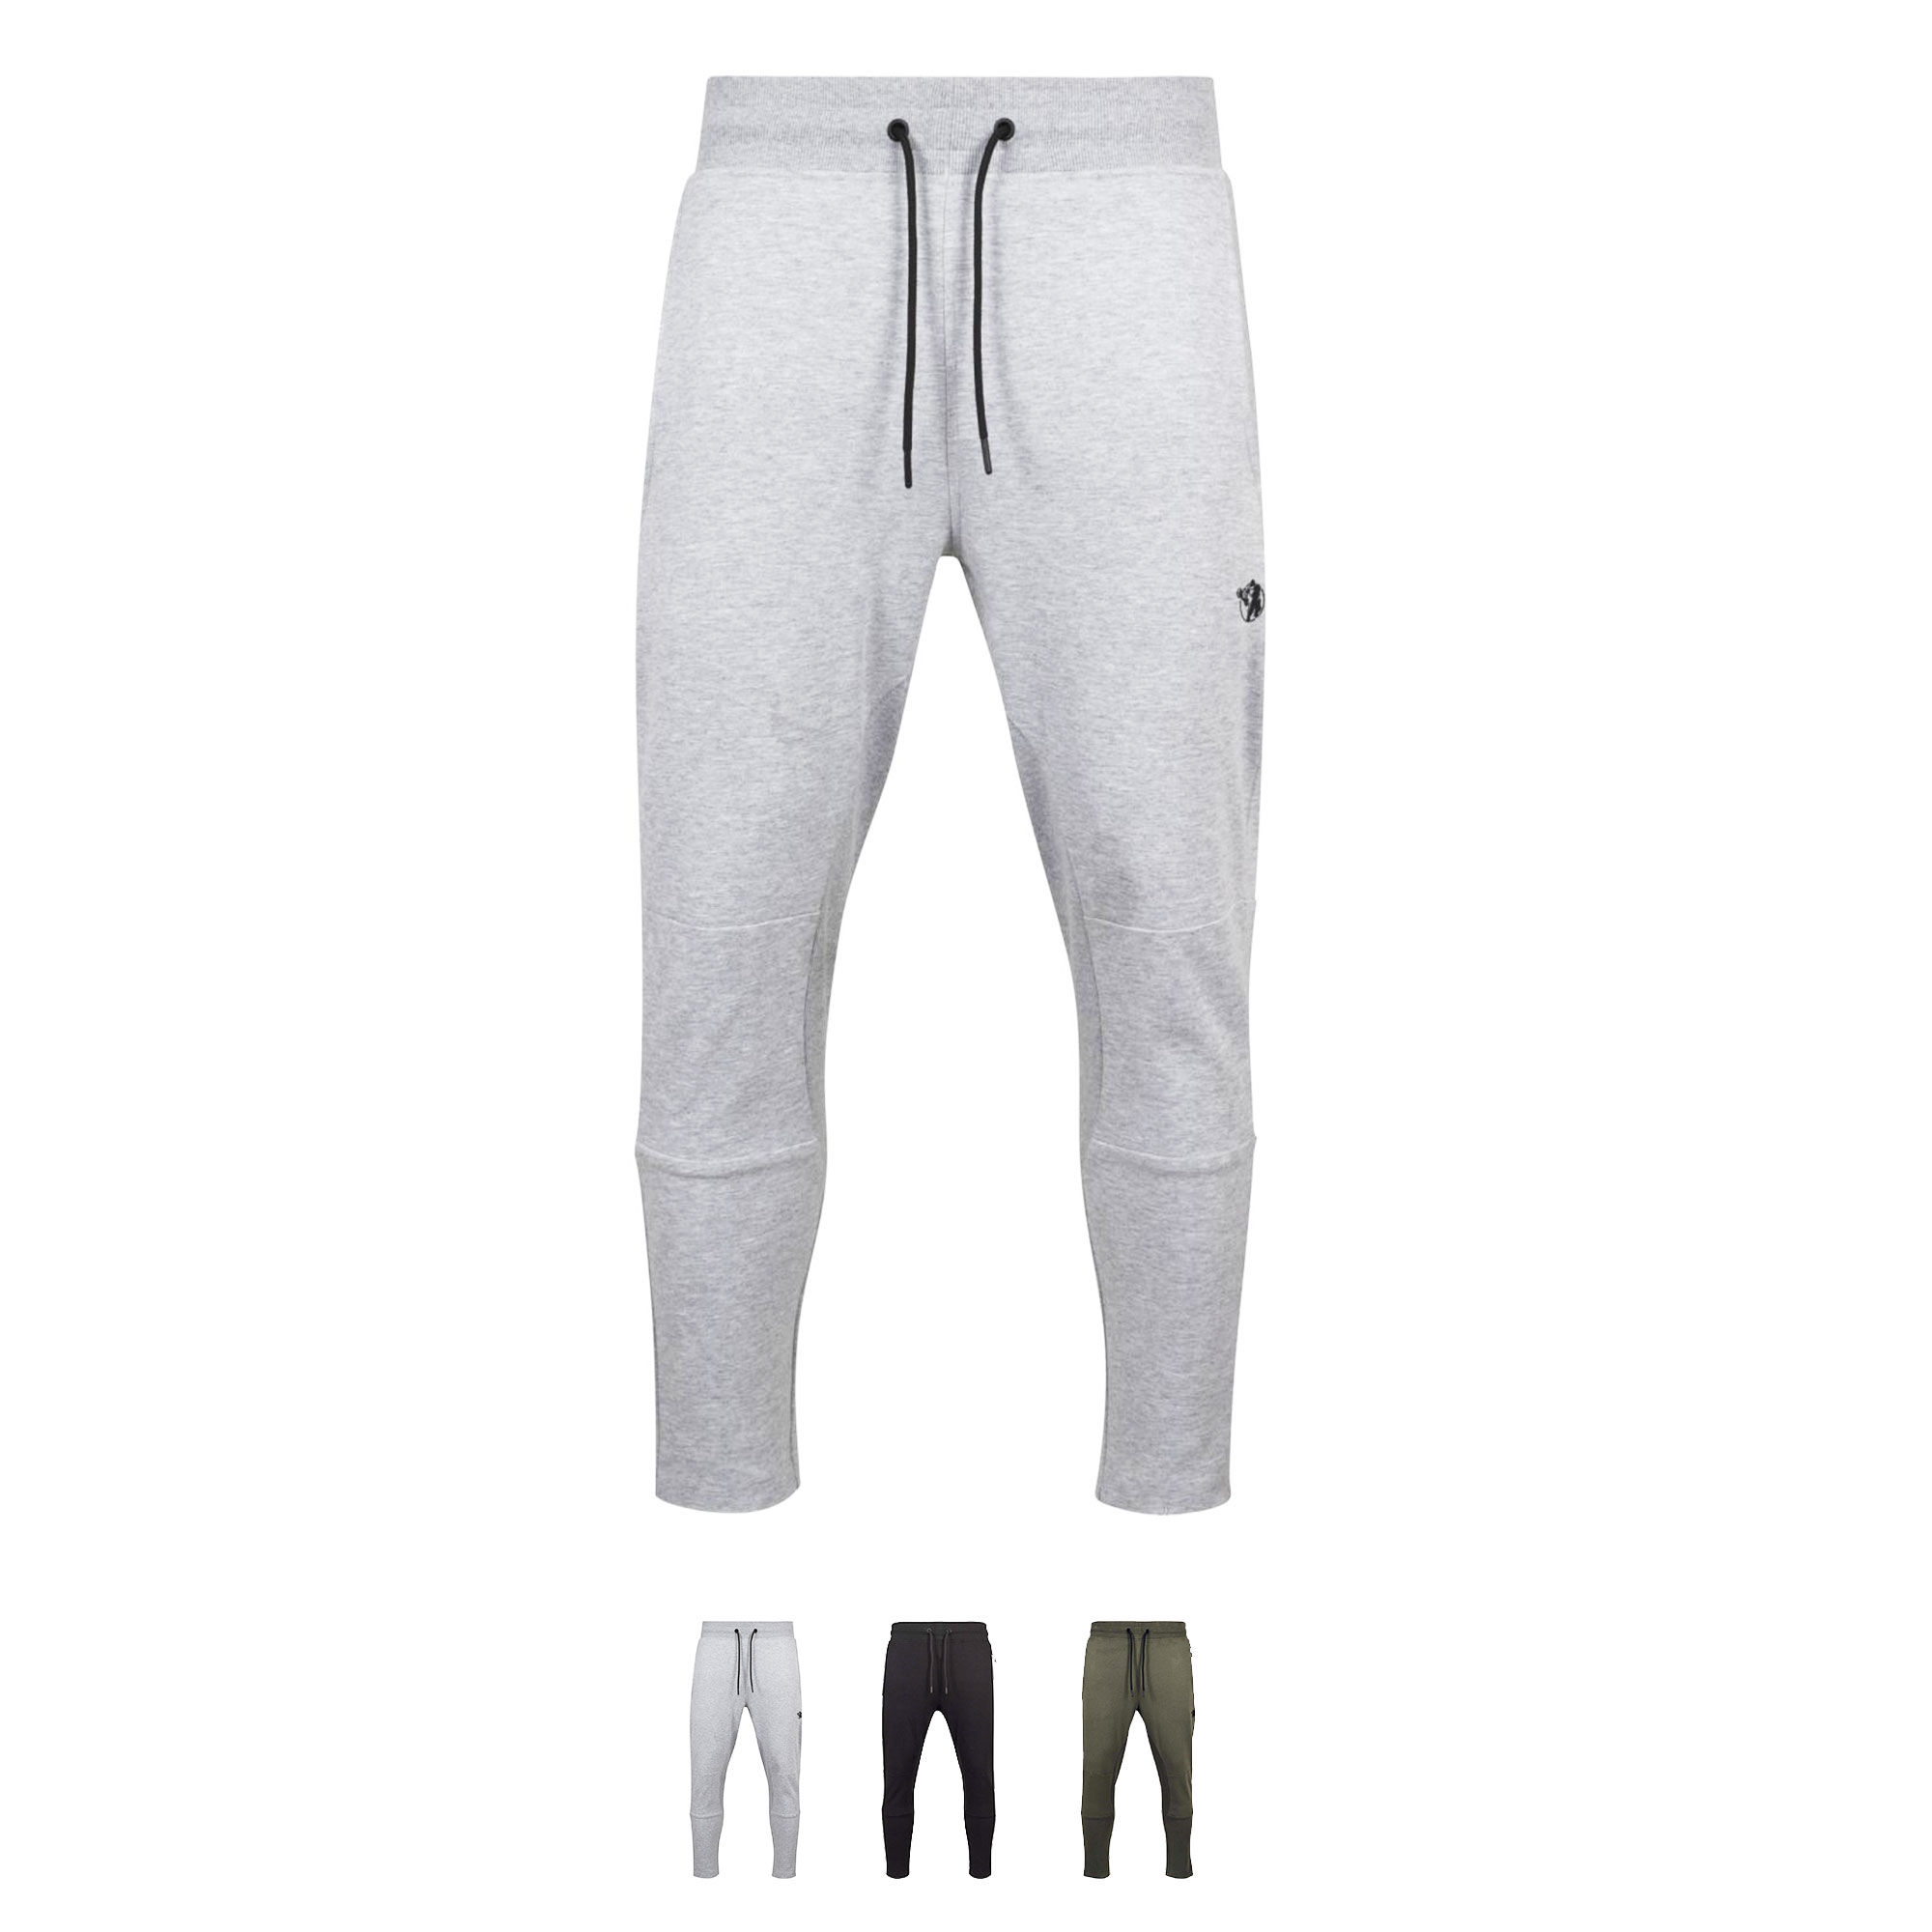 Le Pantalon de Jogging Gorilla Sports en coloris Noir, Gris ou Olive